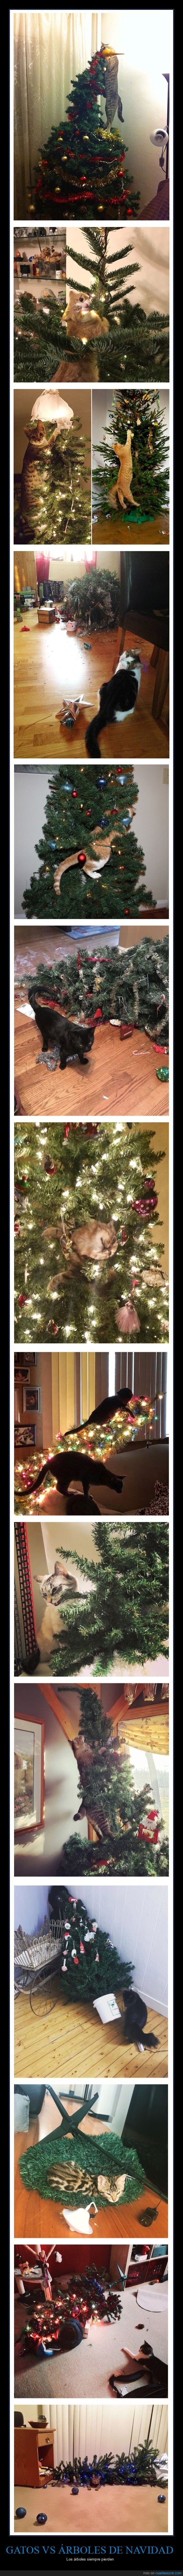 gatos,árboles de navidad